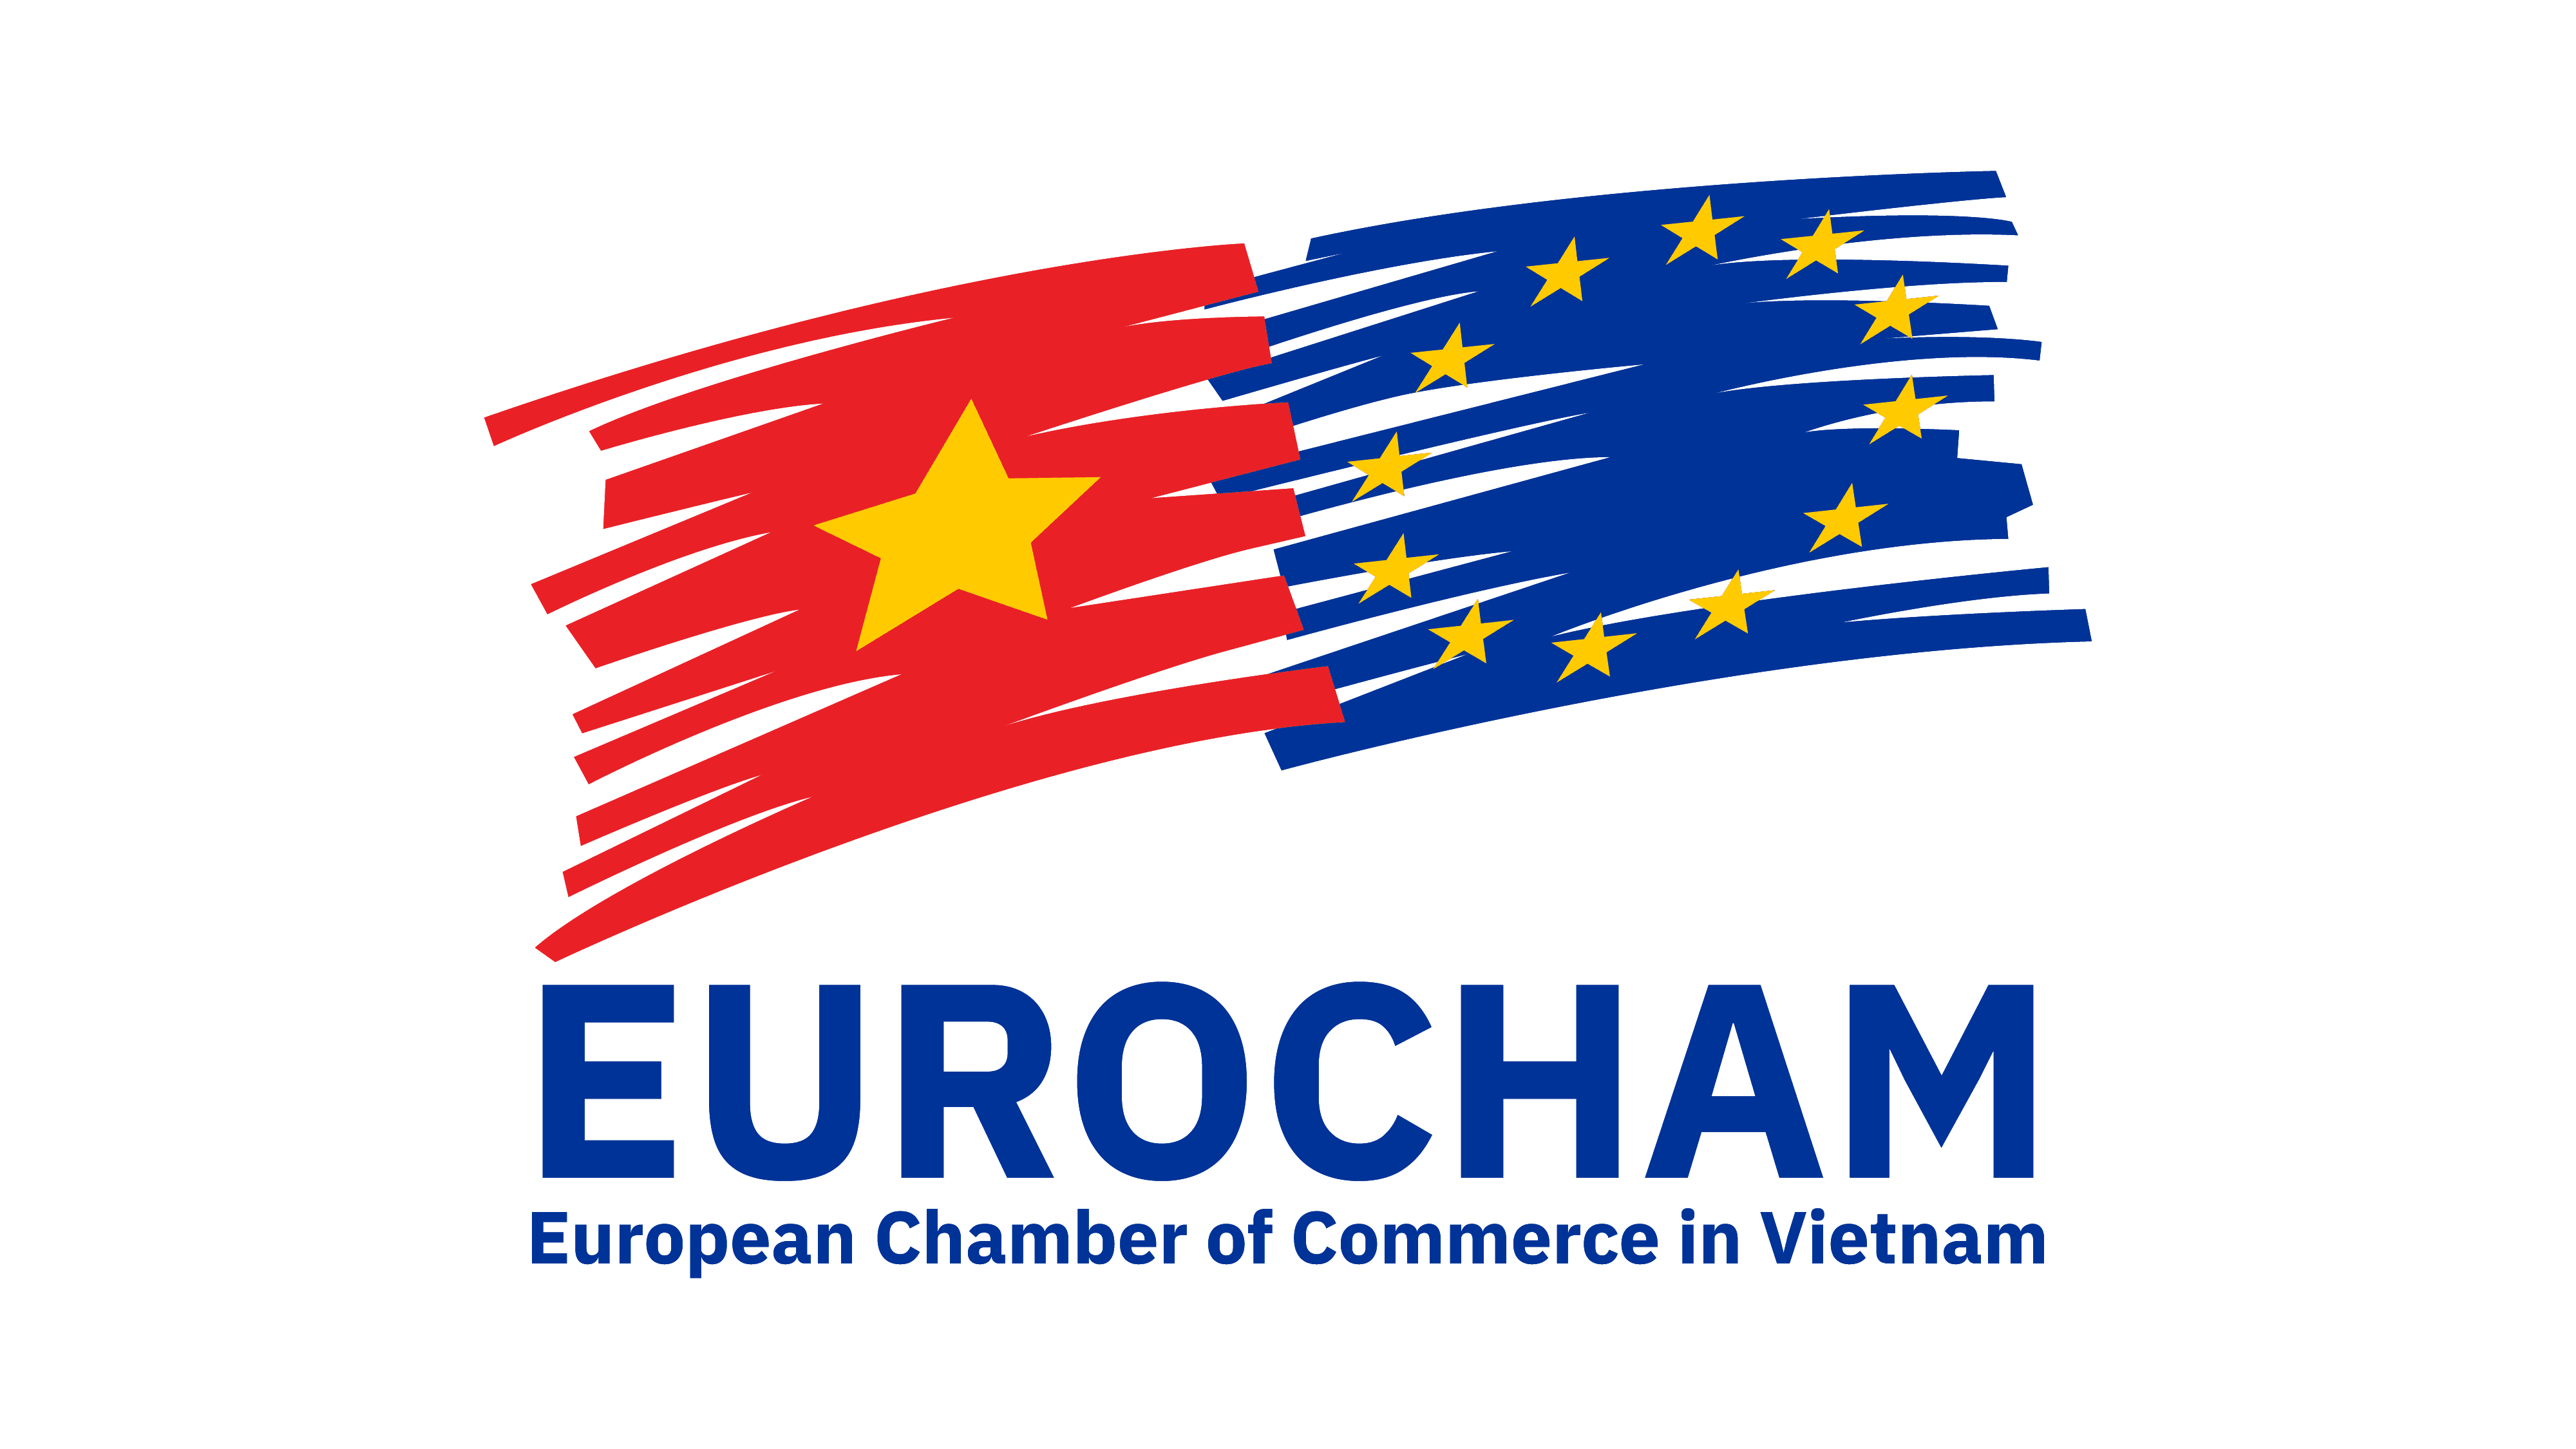 European Chamber of Commerce in Vietnam (EUROCHAM)